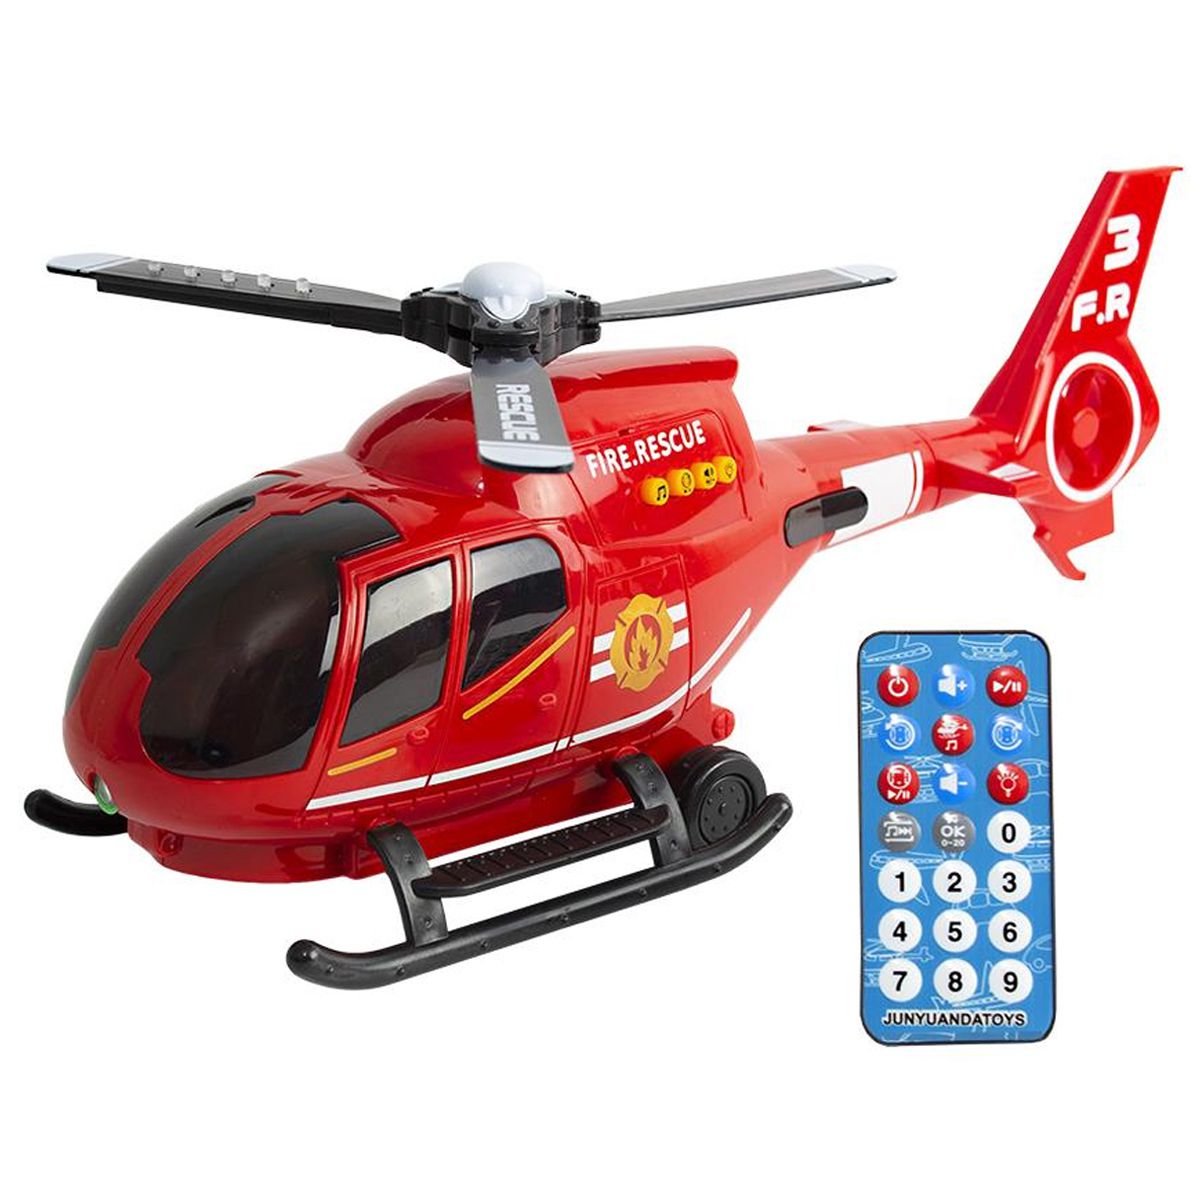 Preços baixos em Kits e Modelos de Helicóptero com Controle Remoto Vermelho